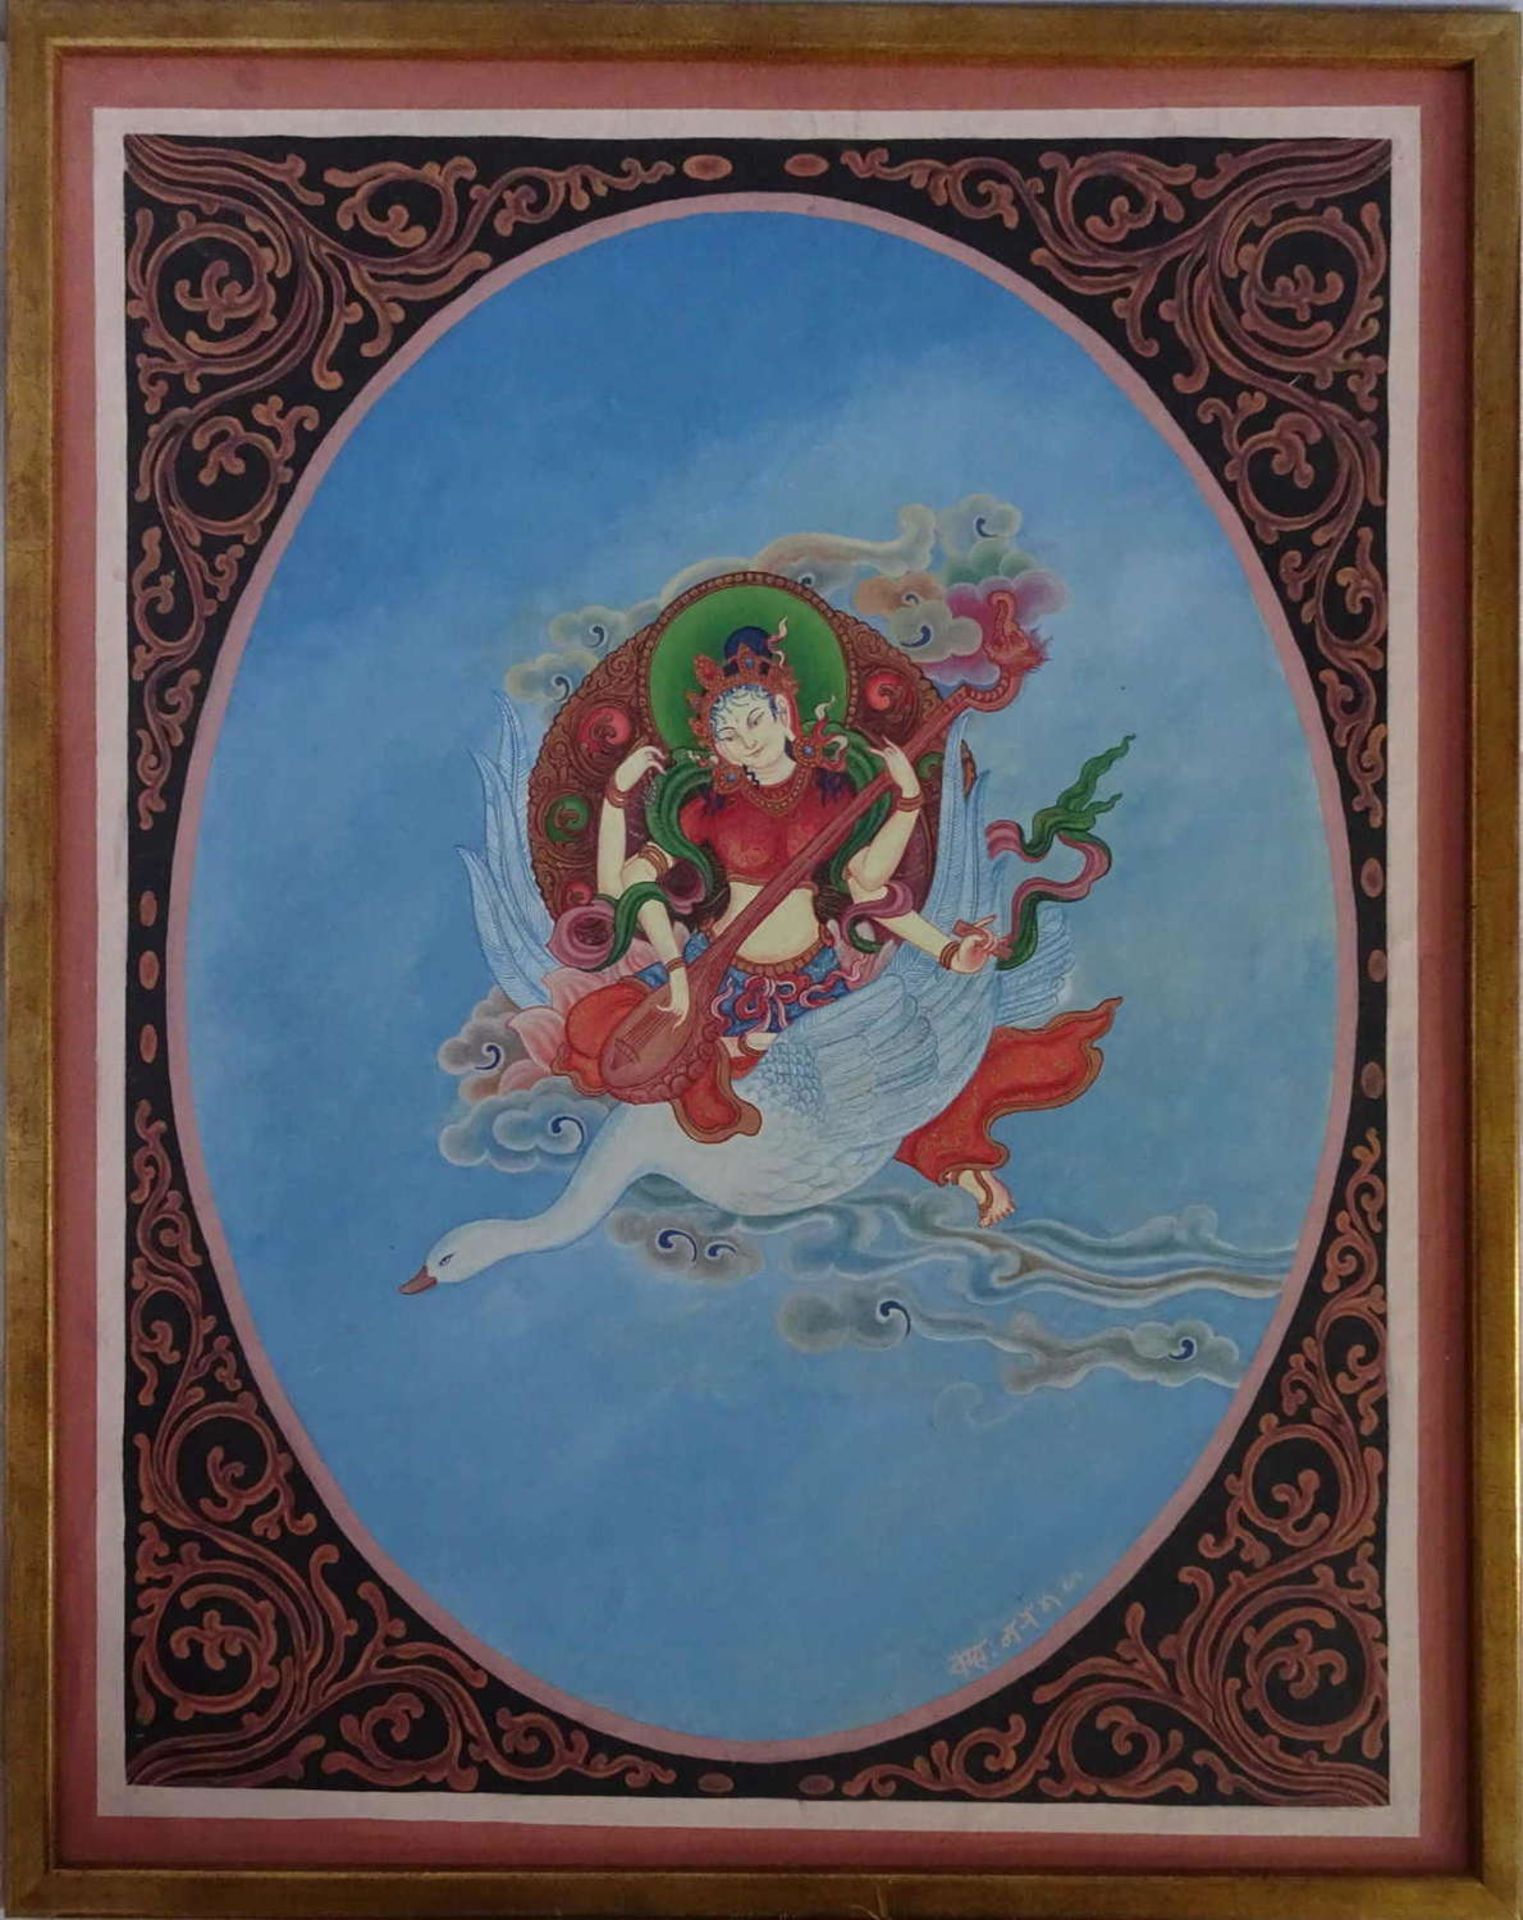 Nepal - Kreidefarben Bild, "Göttin mit Schwan", rechts unten Signatur. Wohl Klostermalerei. Sehr